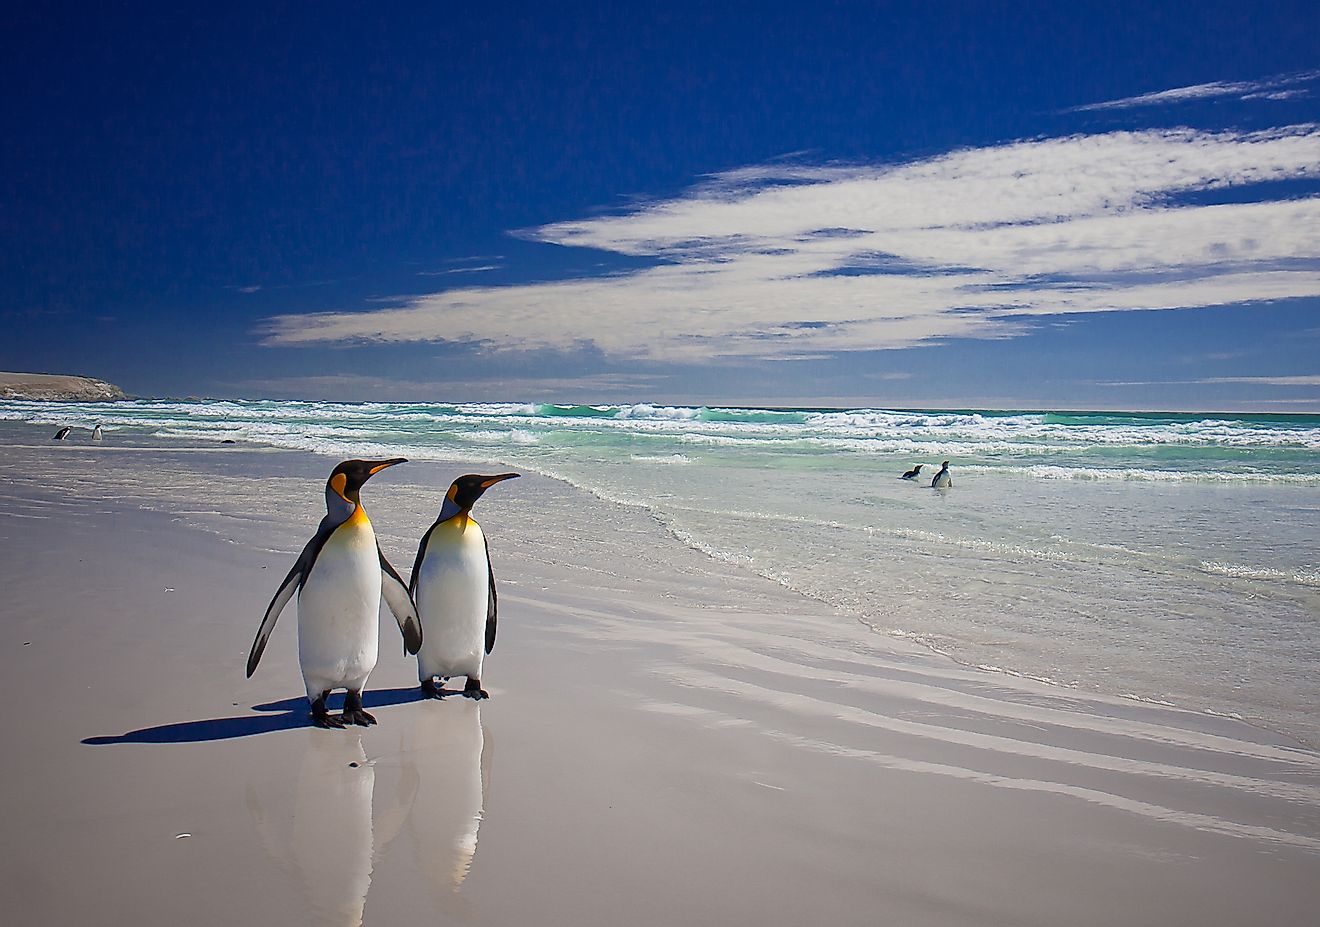 King Penguins at Volunteer Point on the Falkland Islands. Image credit: Neale Cousland/Shutterstock.com